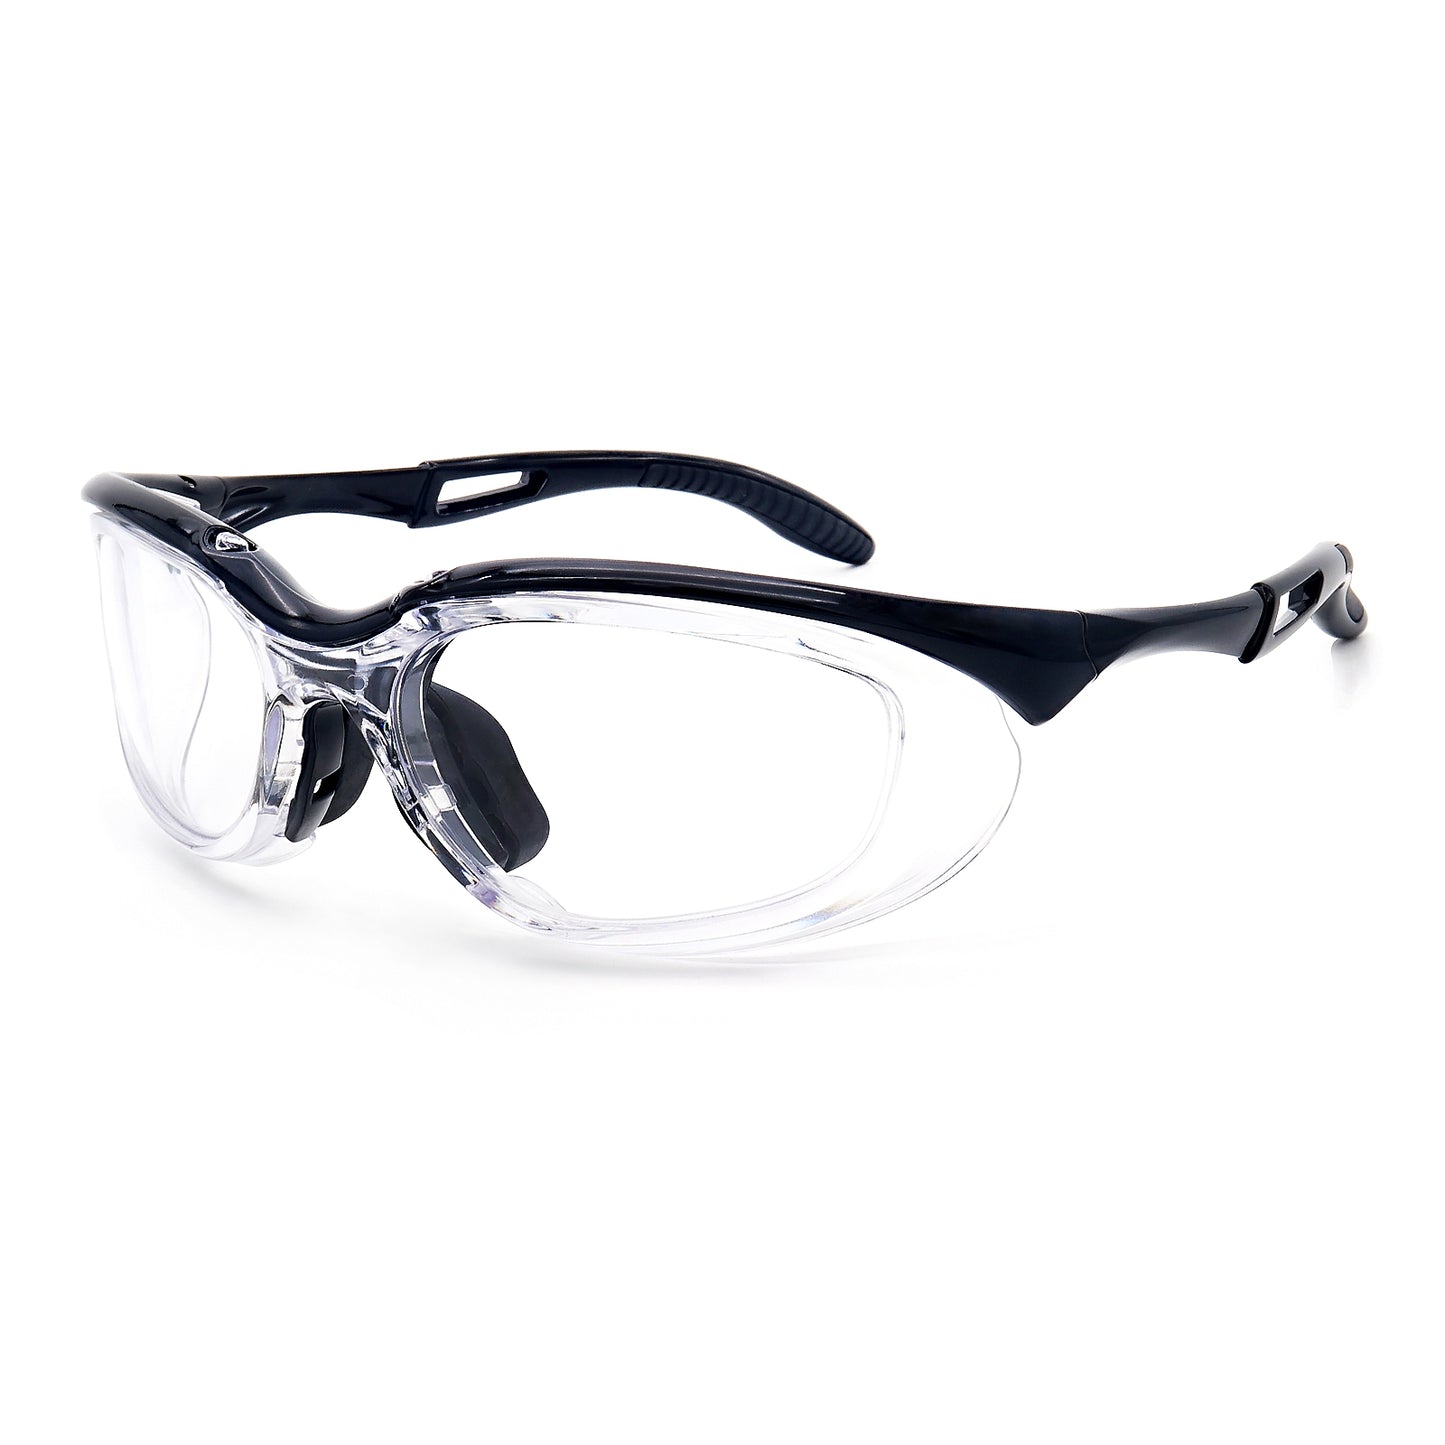 EYESafety Prescription Safety Glasses Black Eyewear